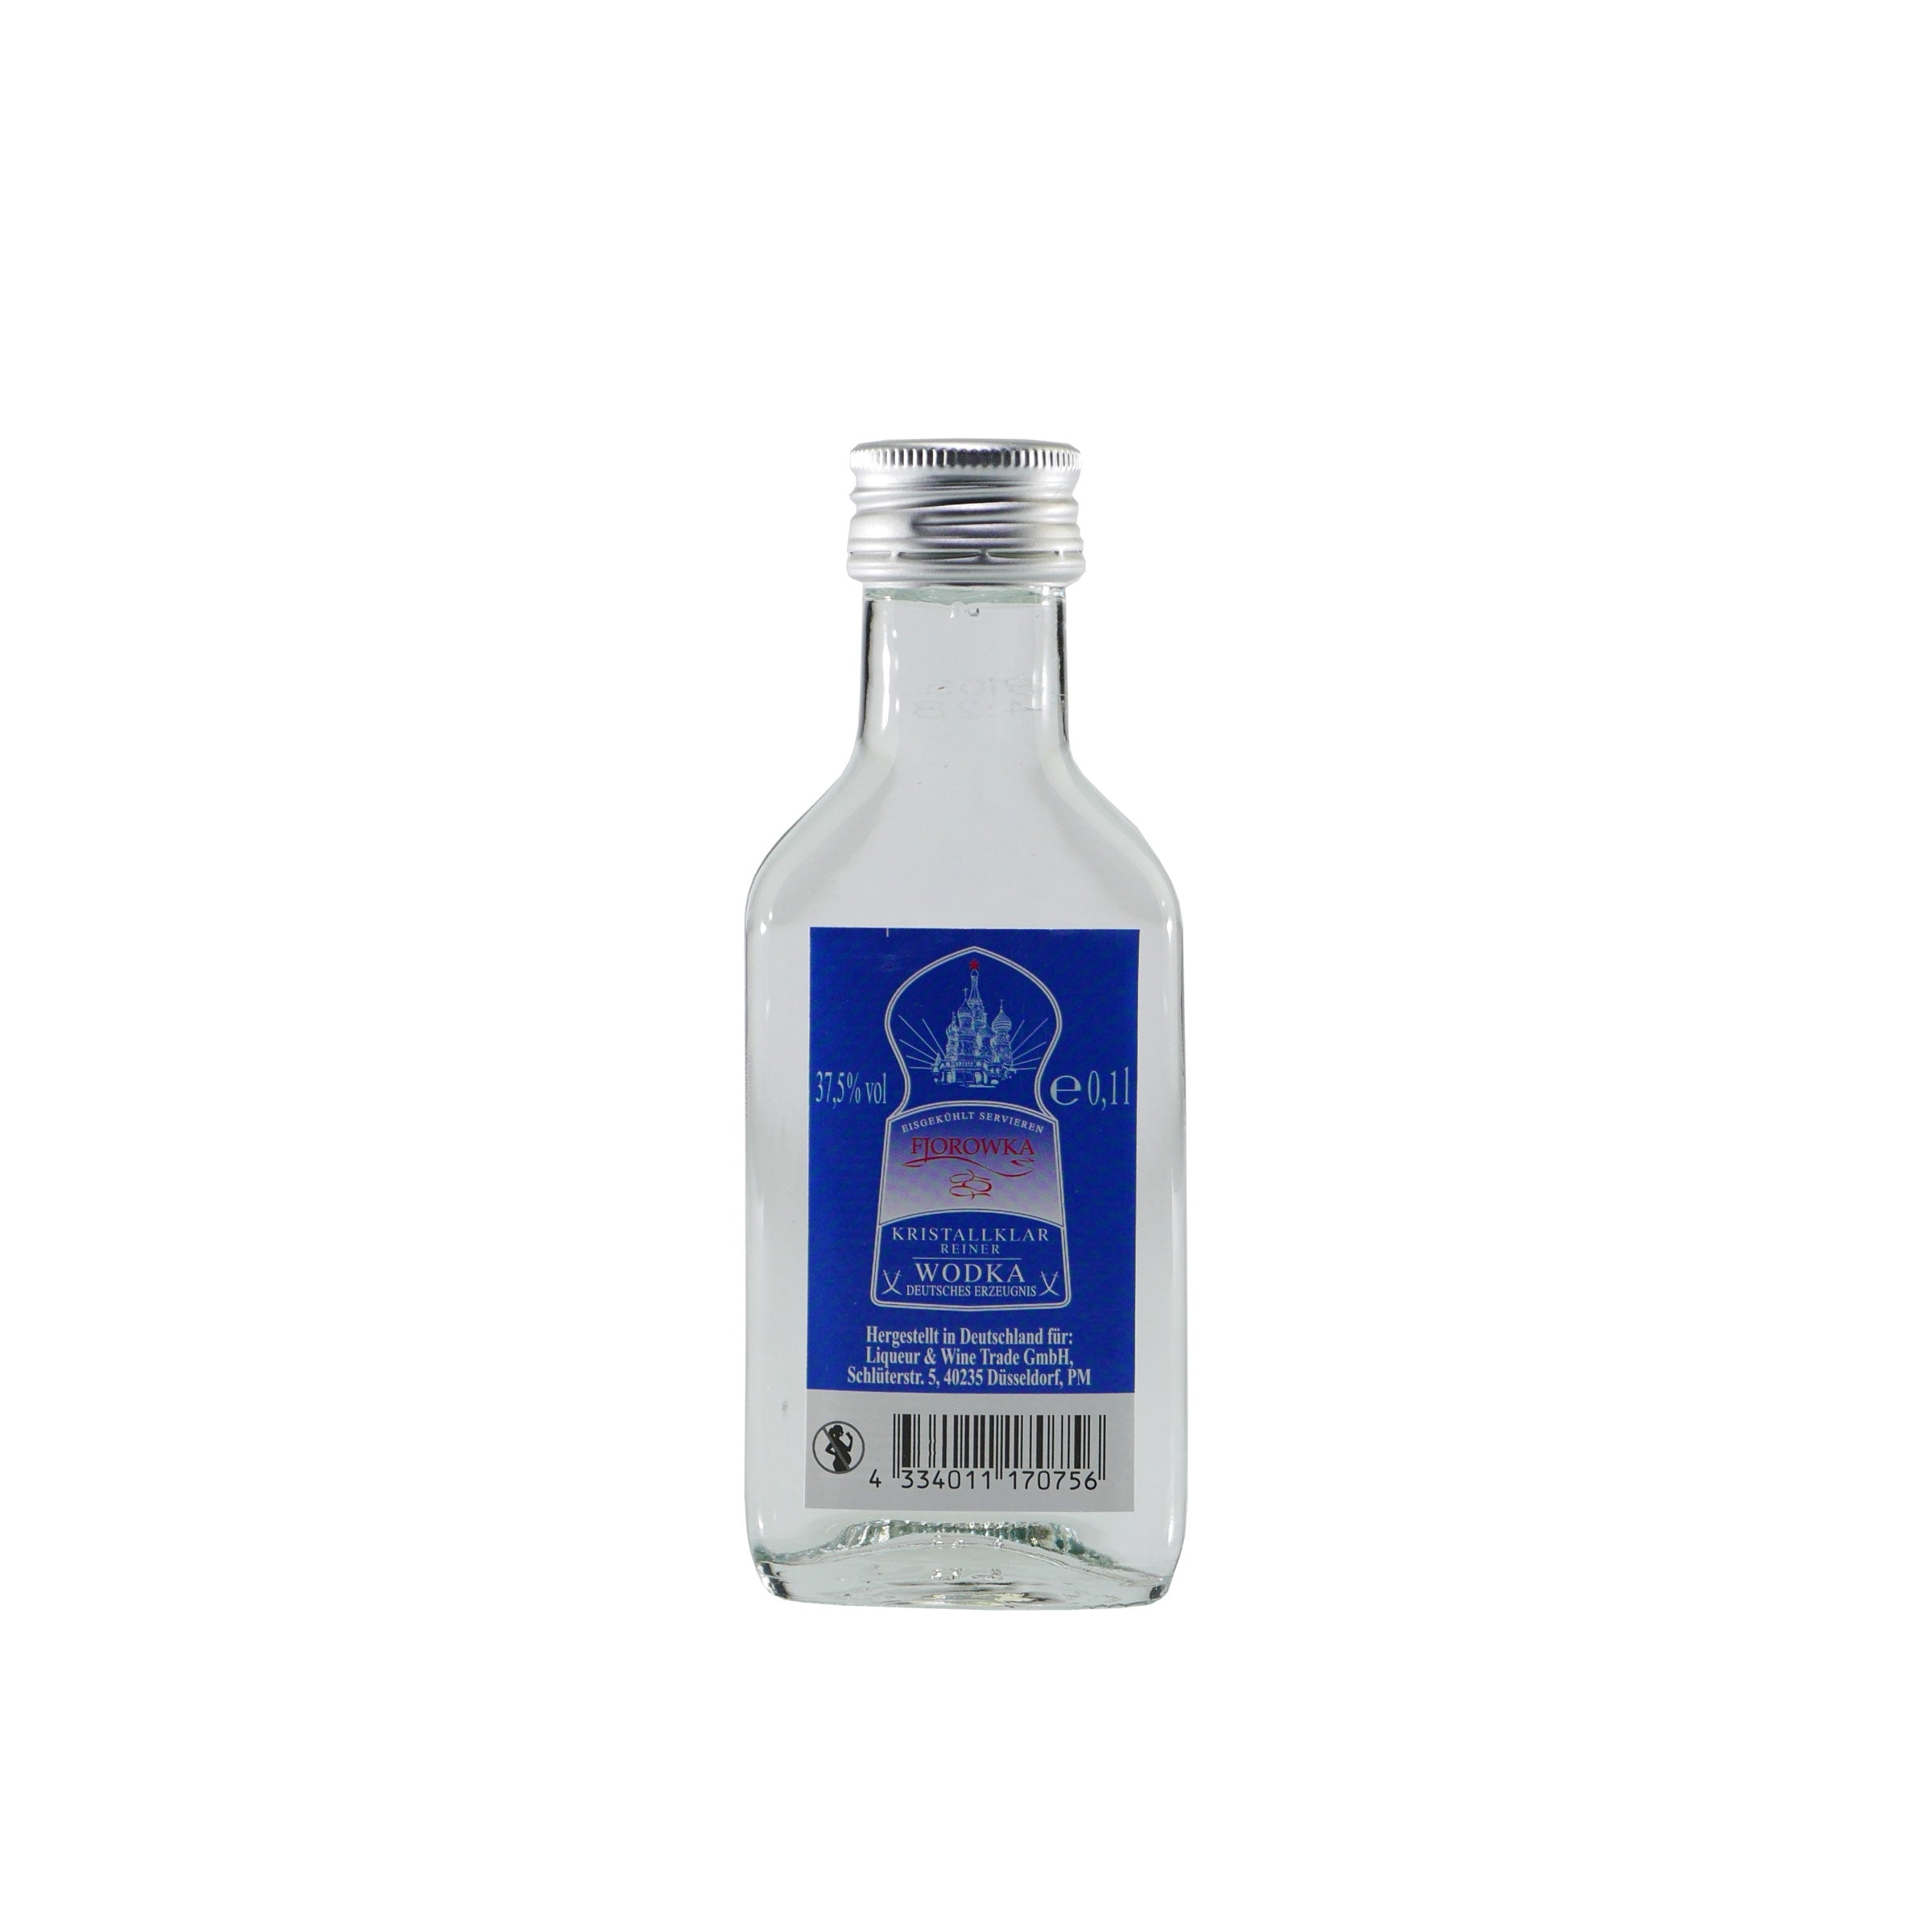 Fjorowka Wodka (12 x 0,1L)